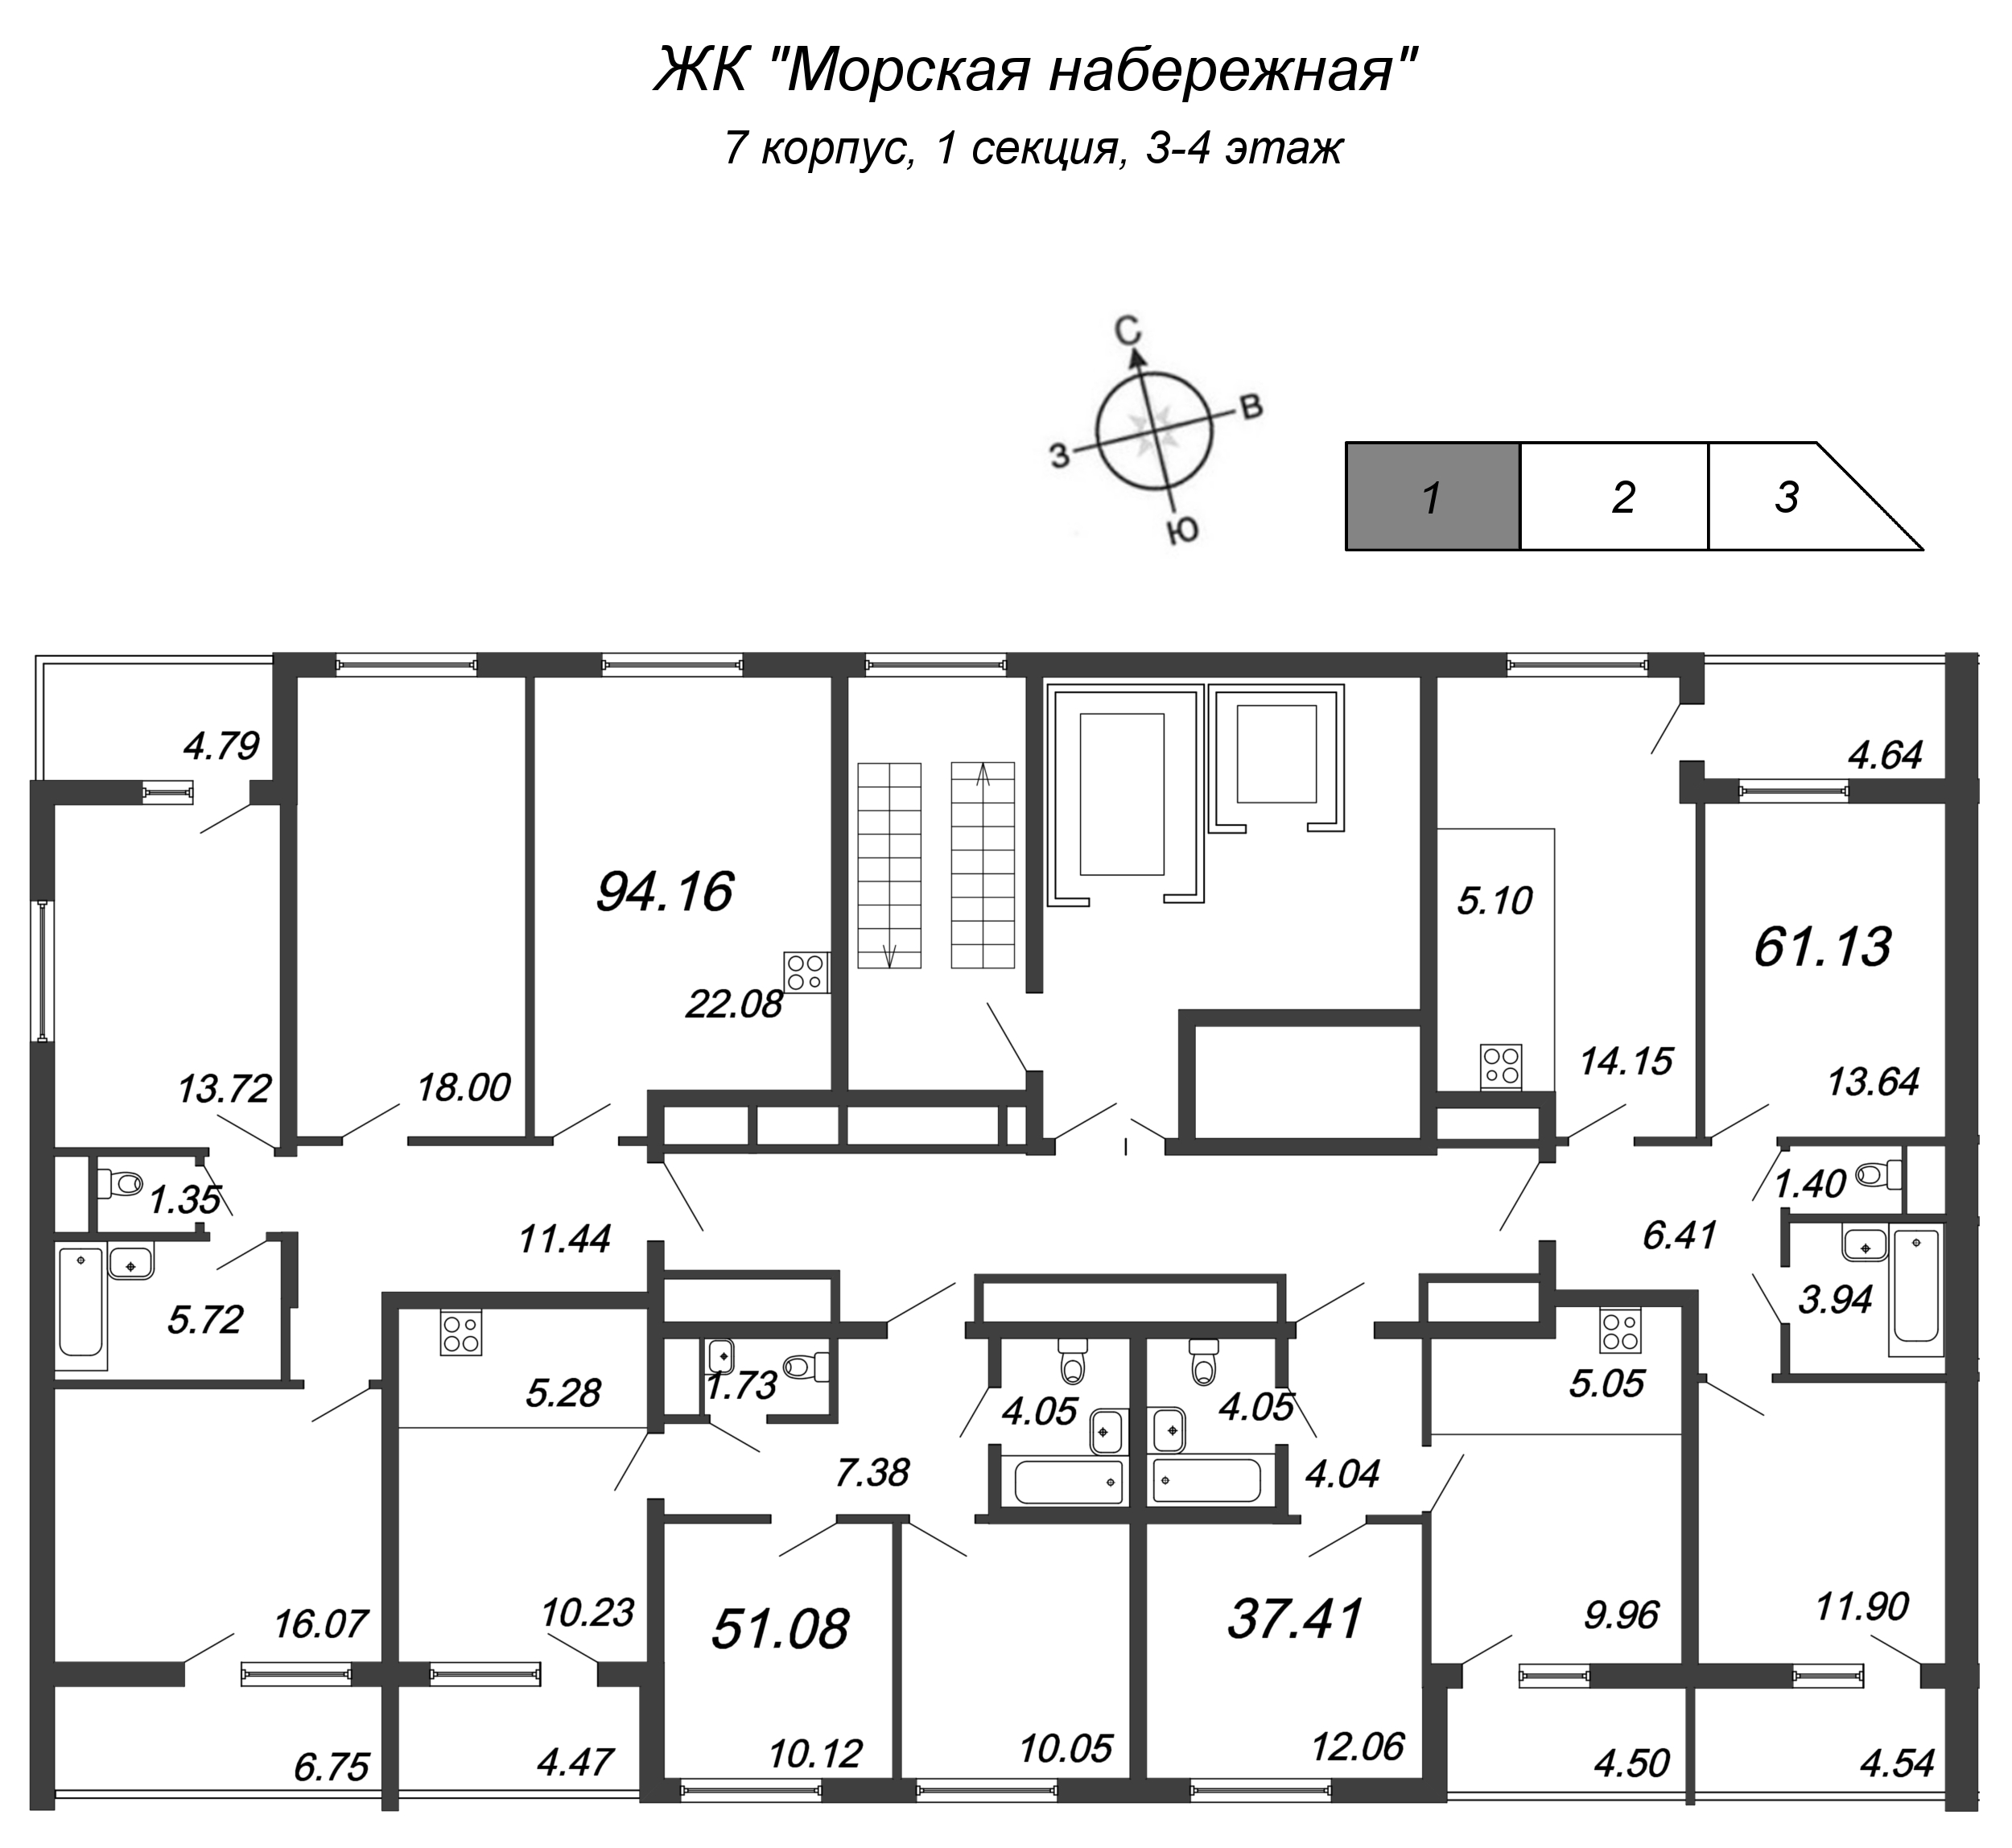 4-комнатная (Евро) квартира, 92.2 м² в ЖК "Морская набережная" - планировка этажа